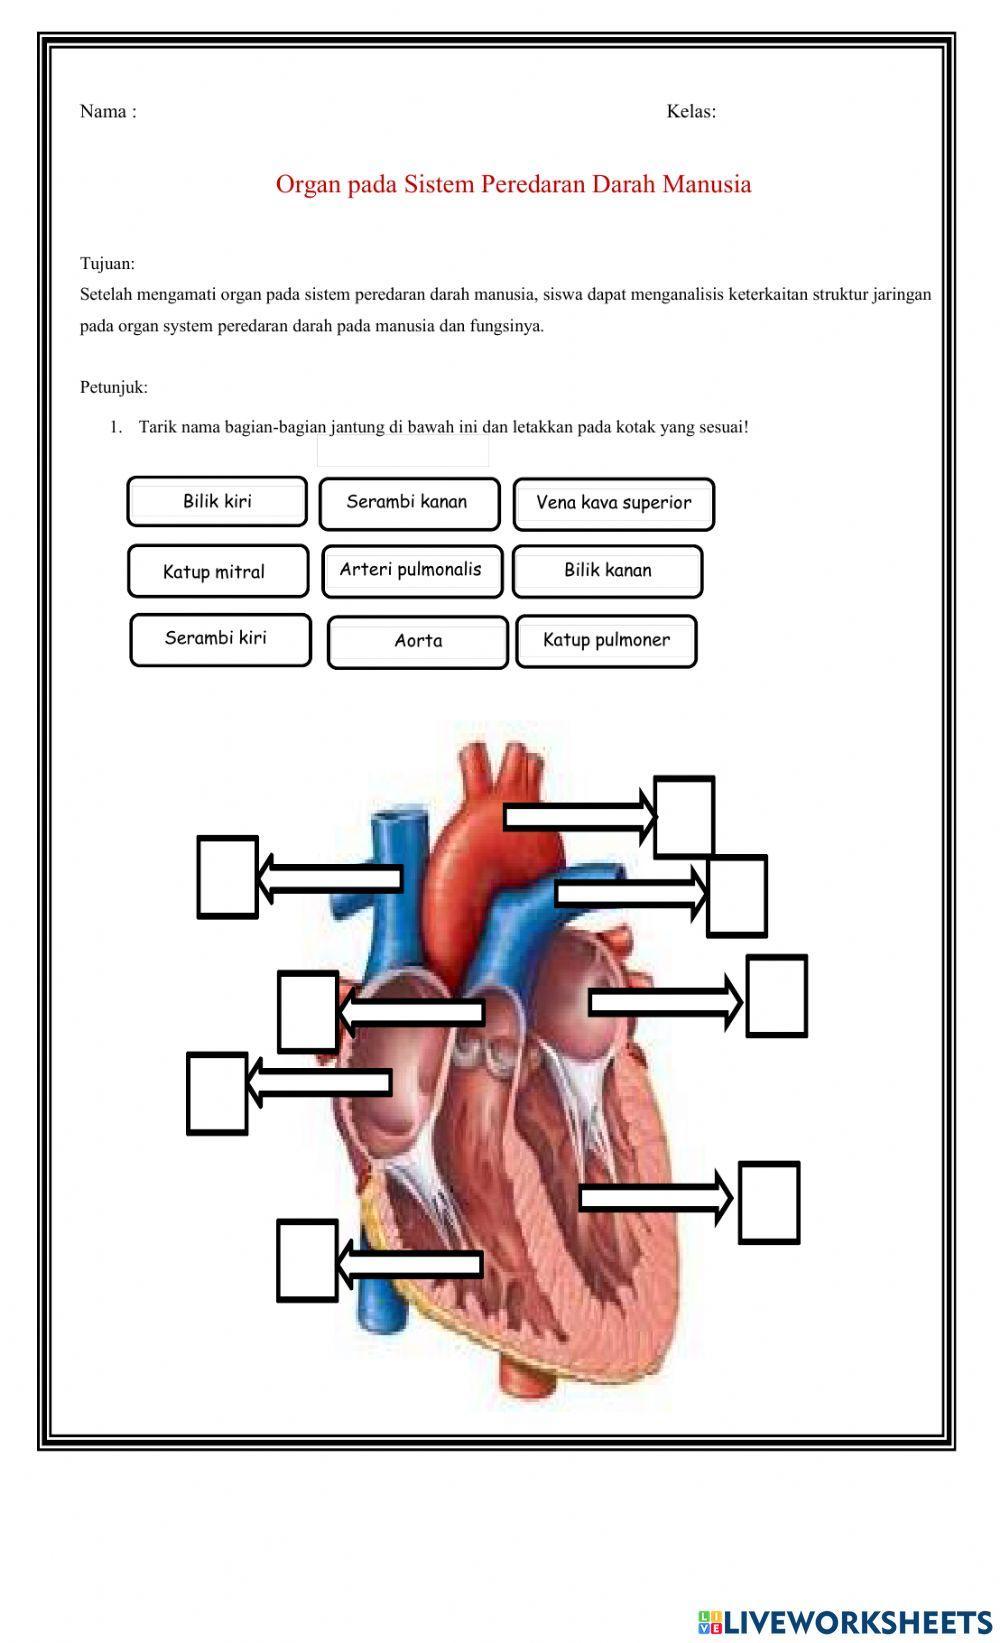 Organ pada Sistem Peredaran Darah Manusia